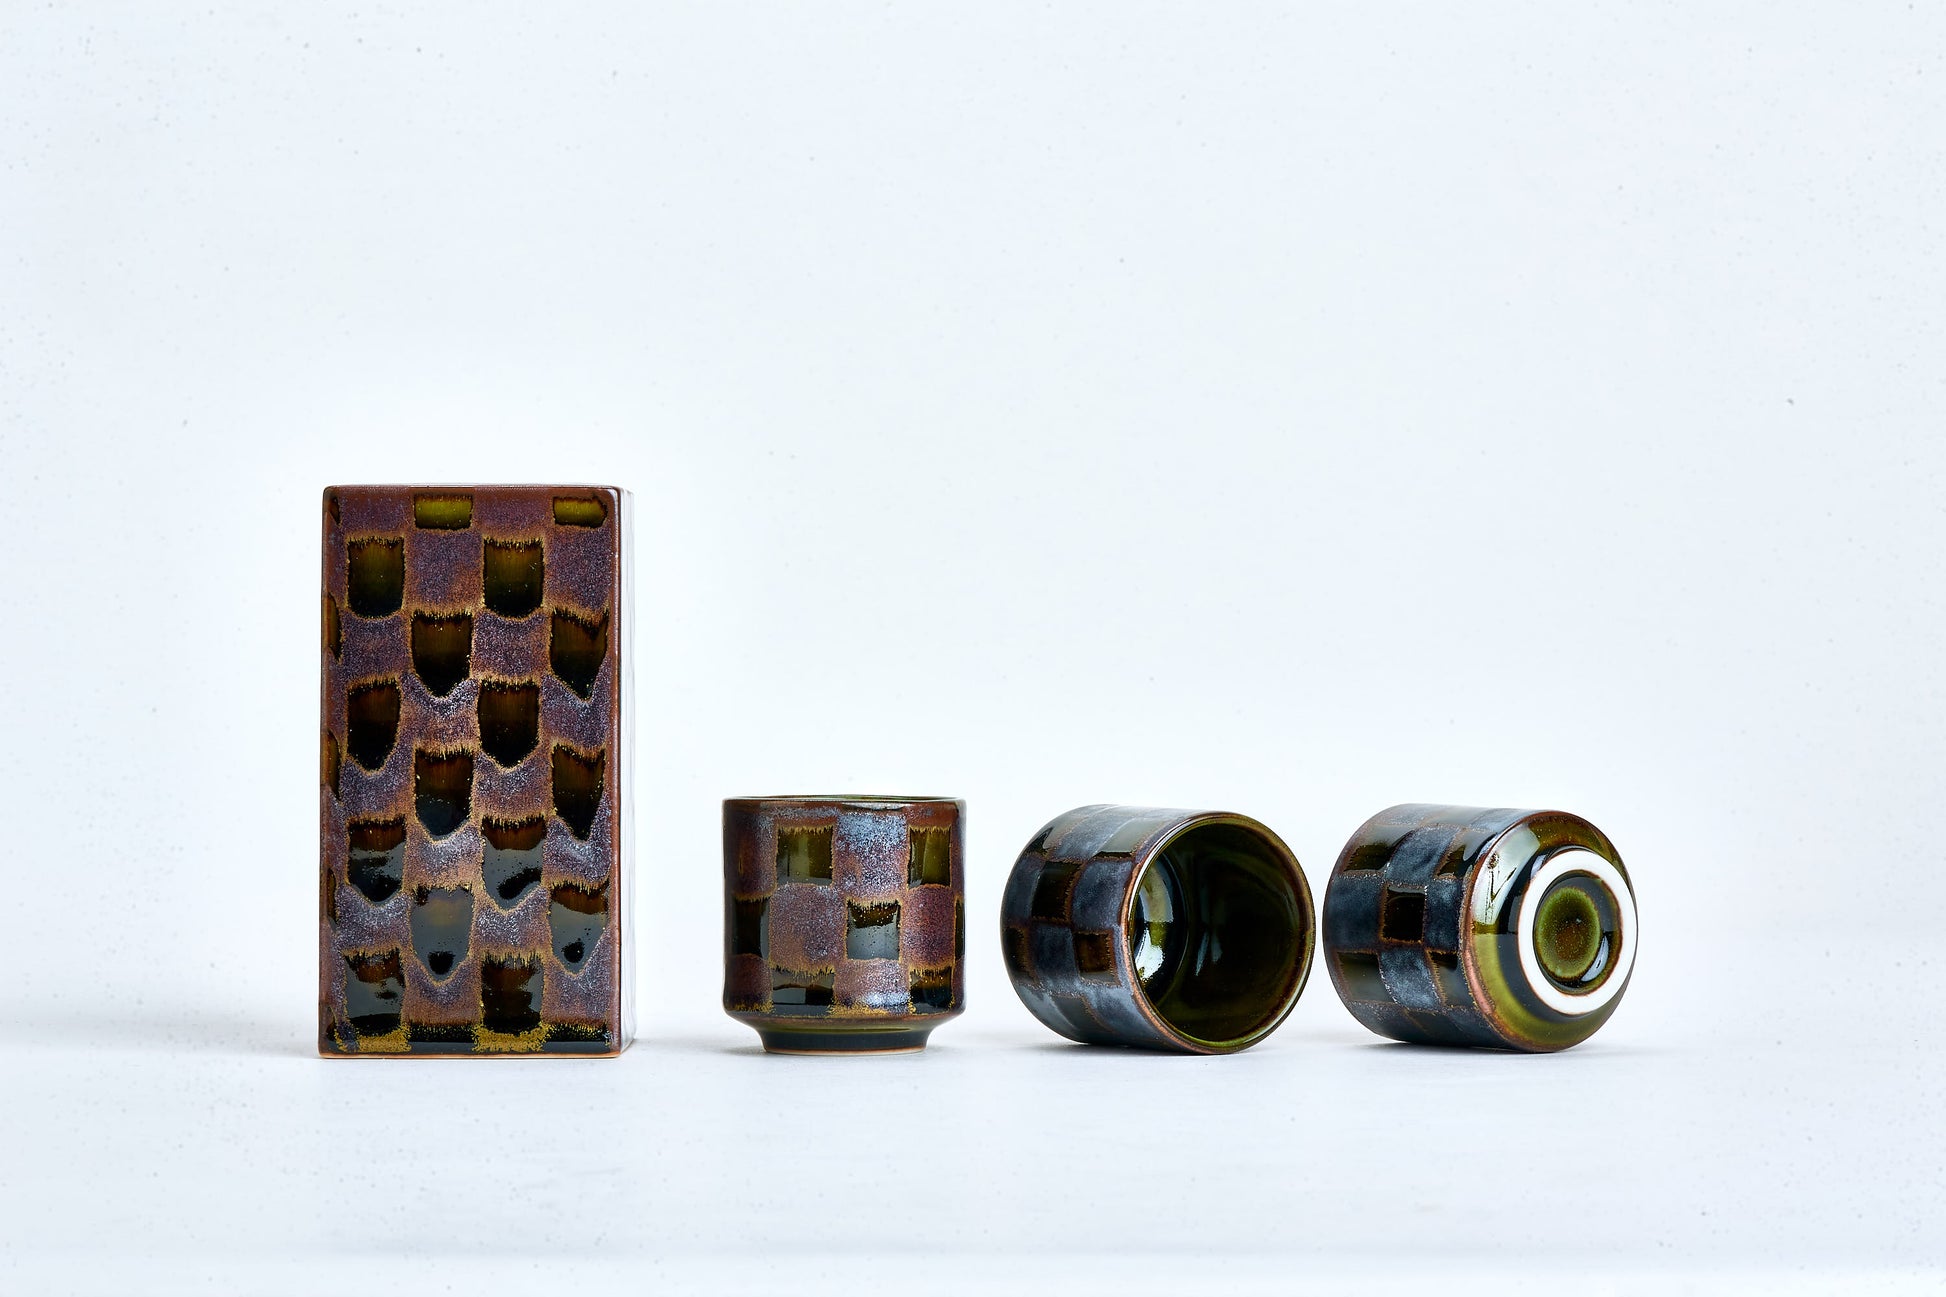 Textured ceramic sake set